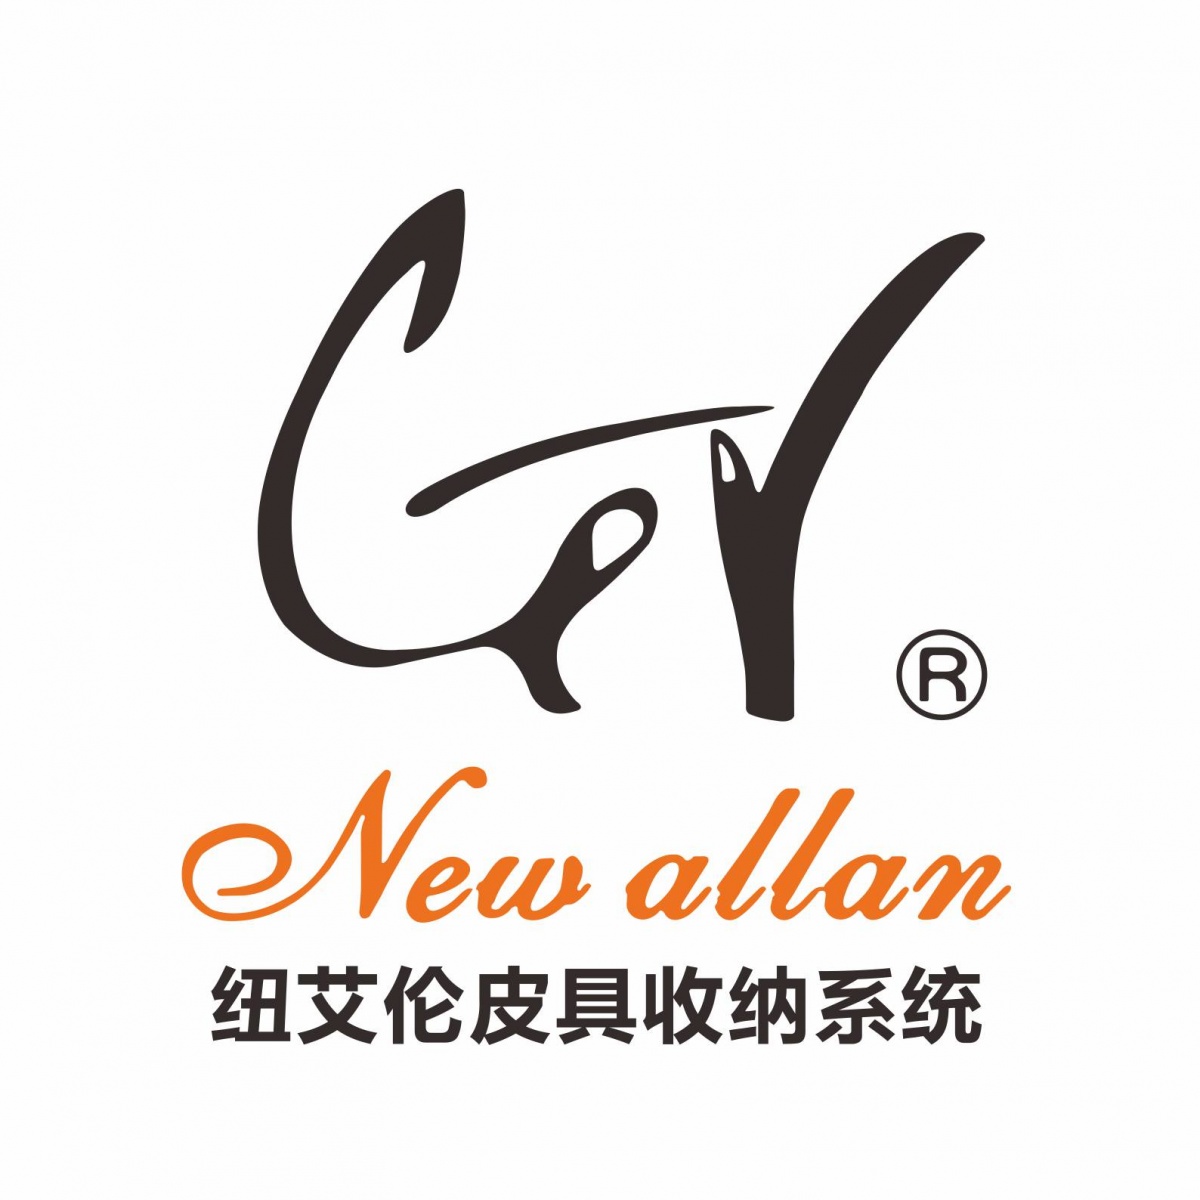 GR New allan-logo2.jpg